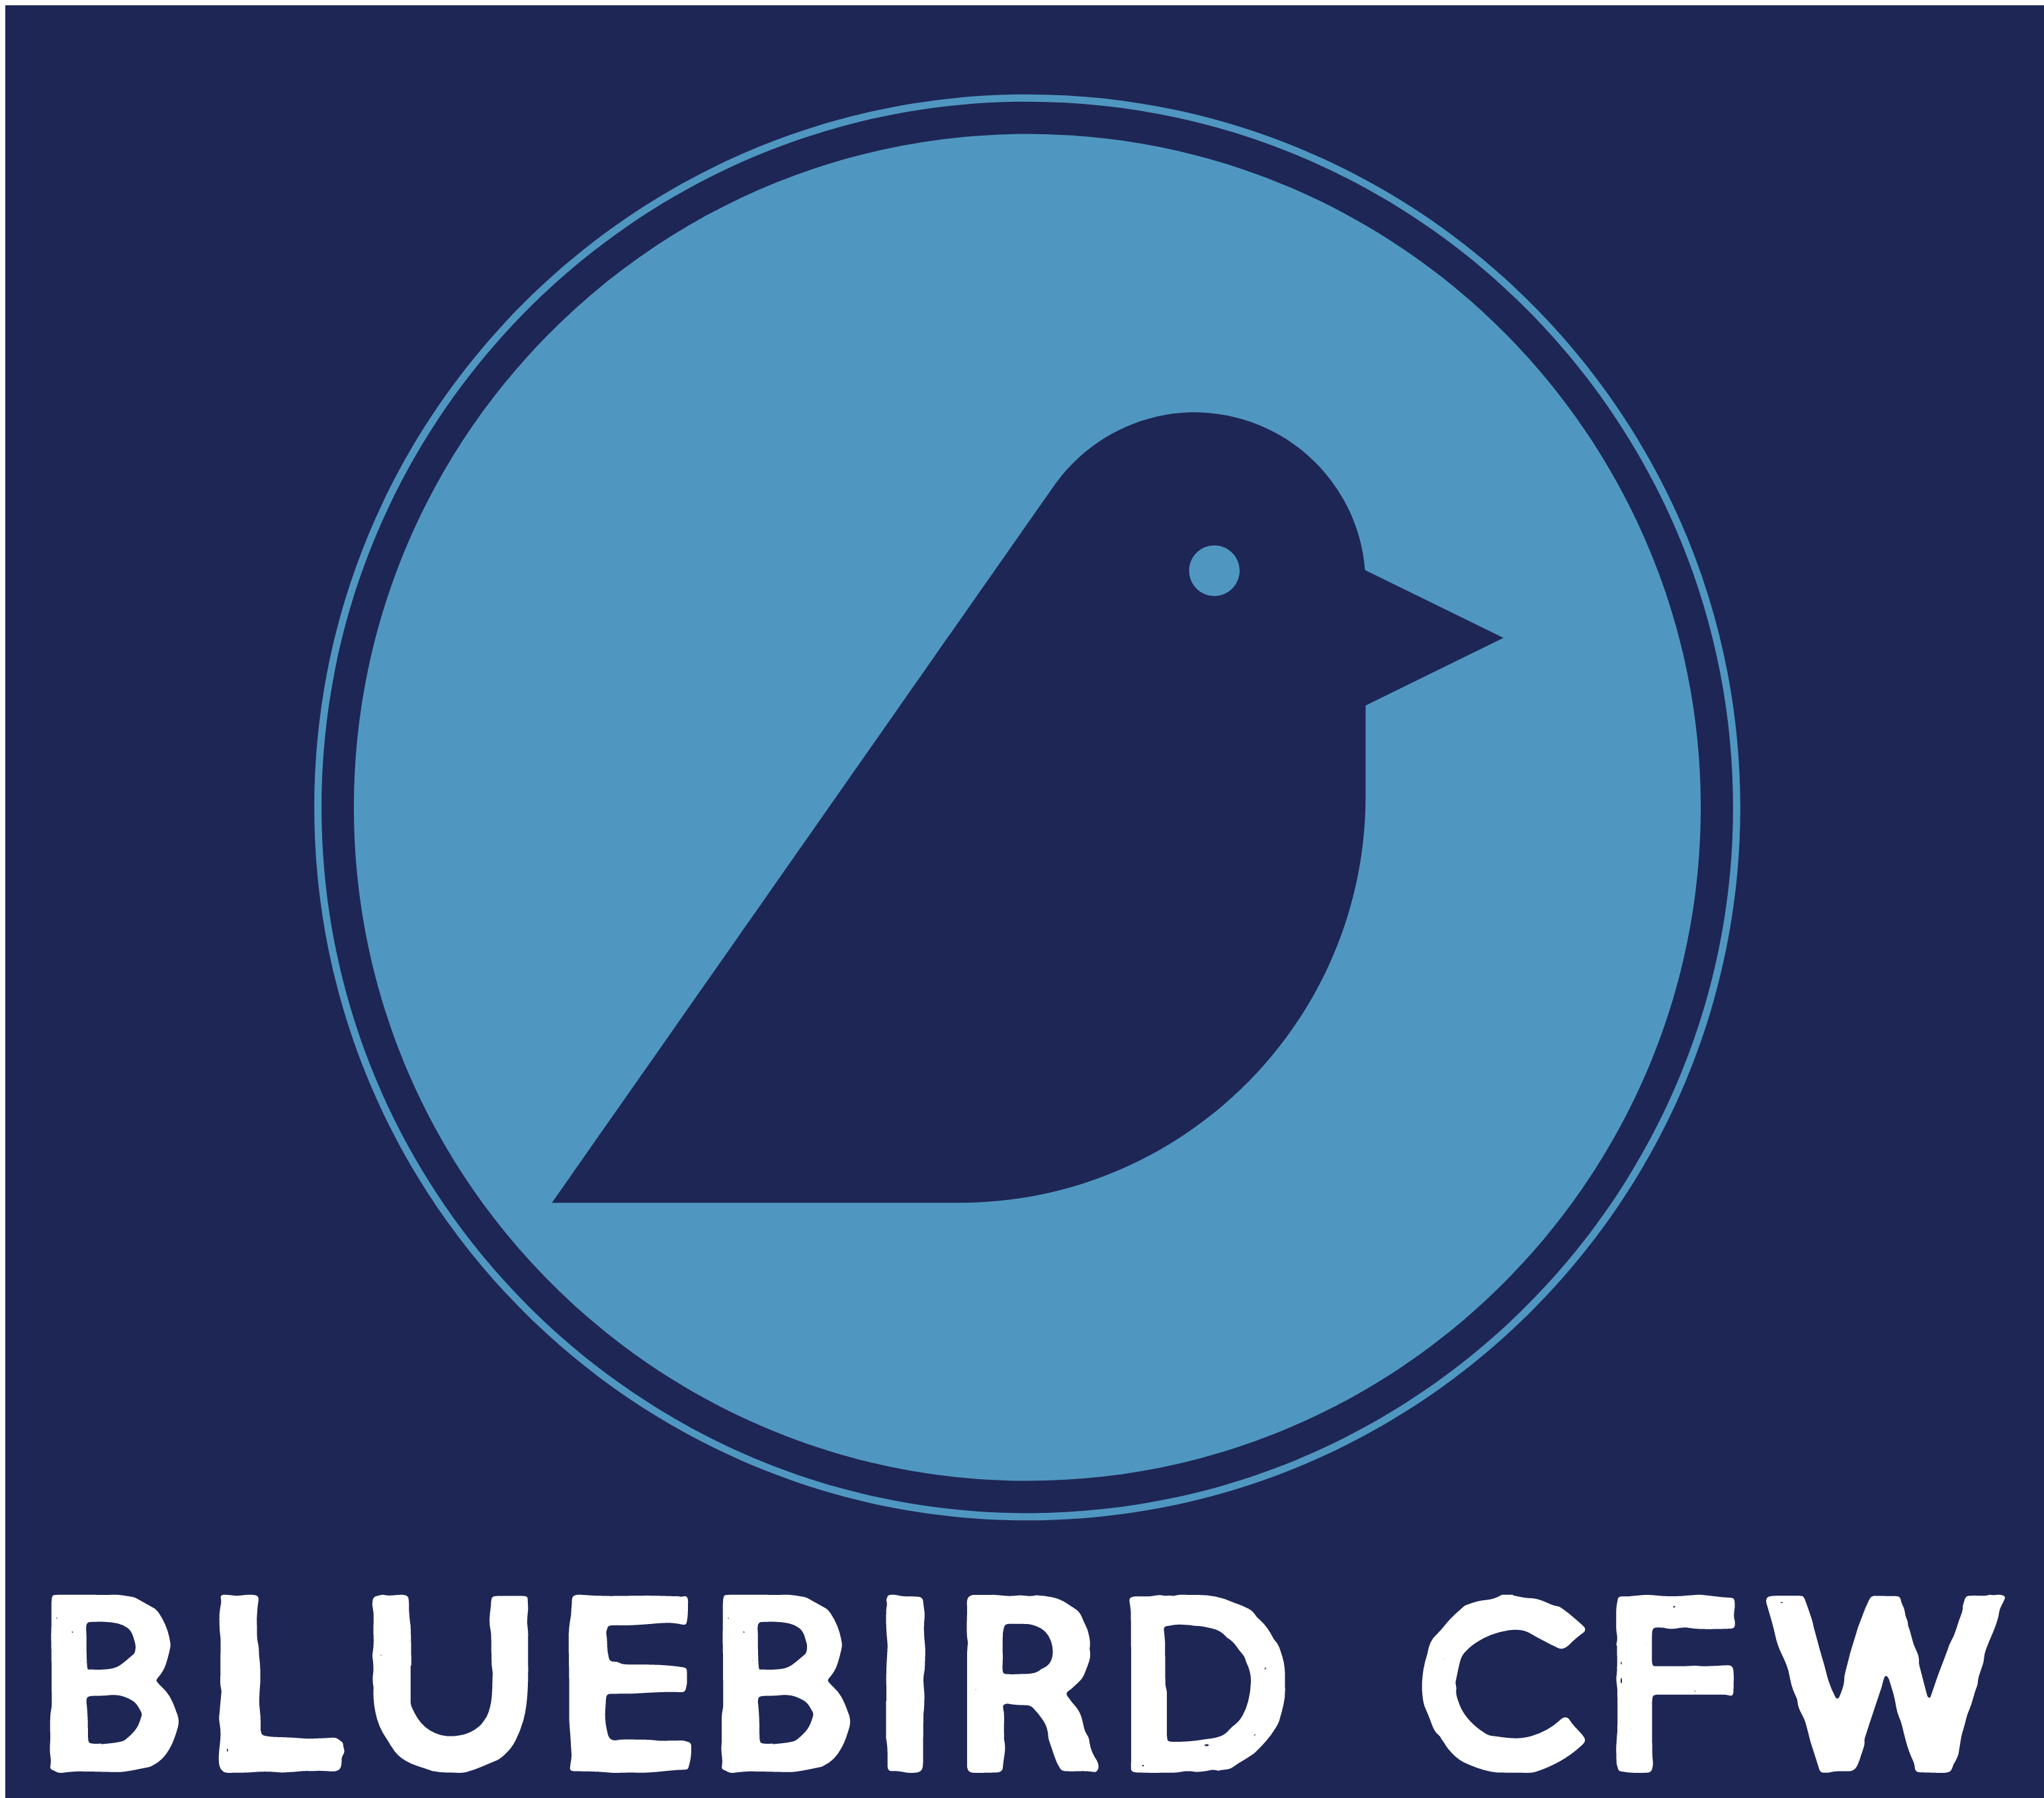 Bluebird CFW, LLC Logo